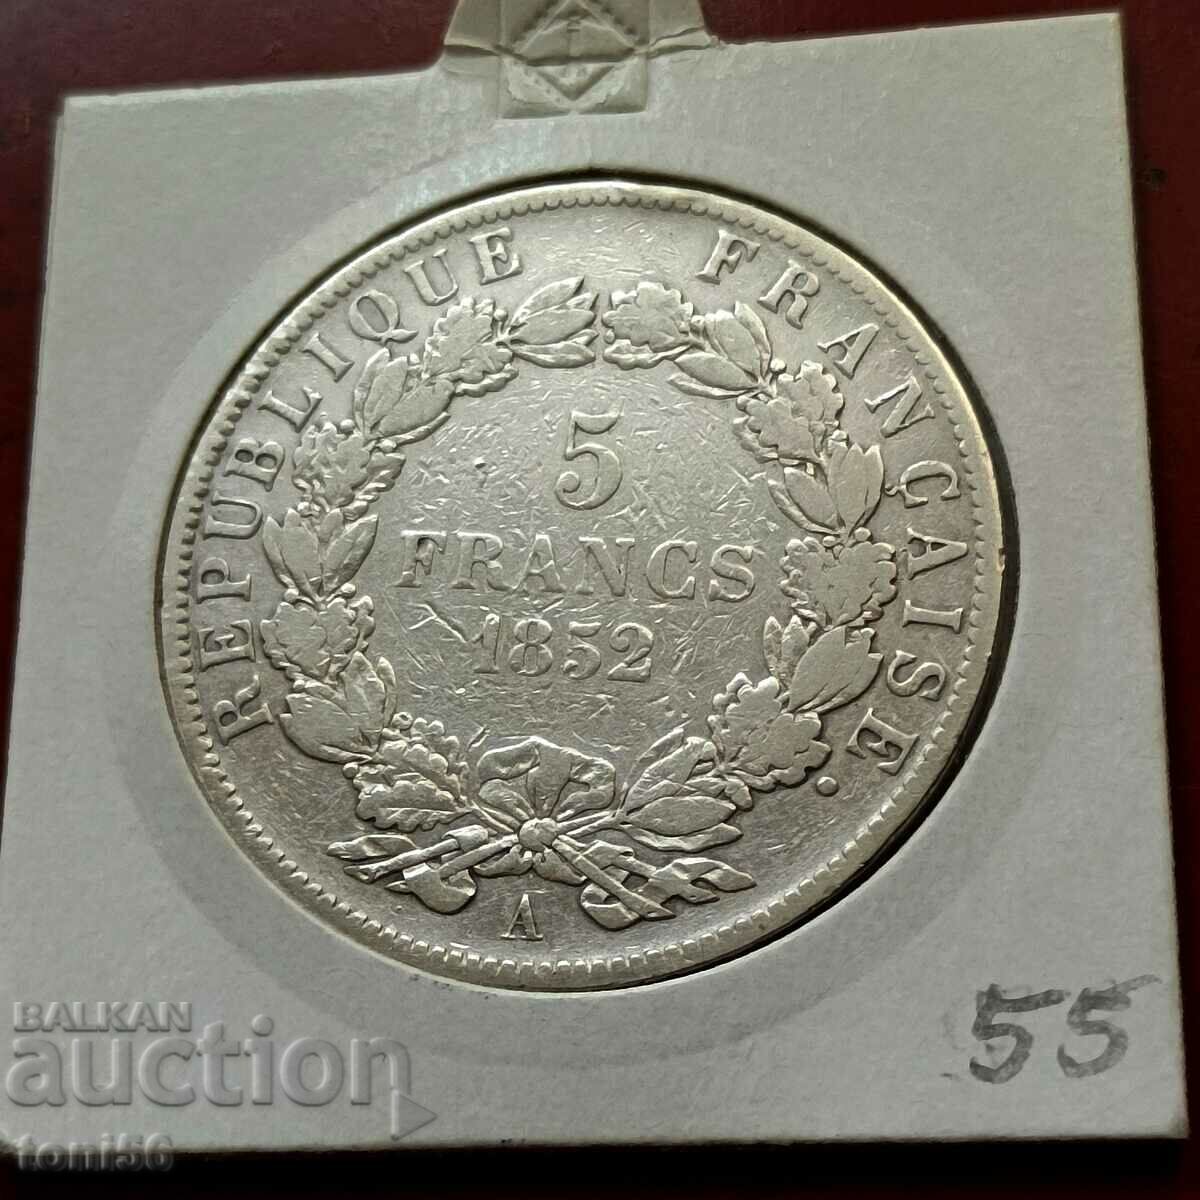 France 5 francs 1852 silver